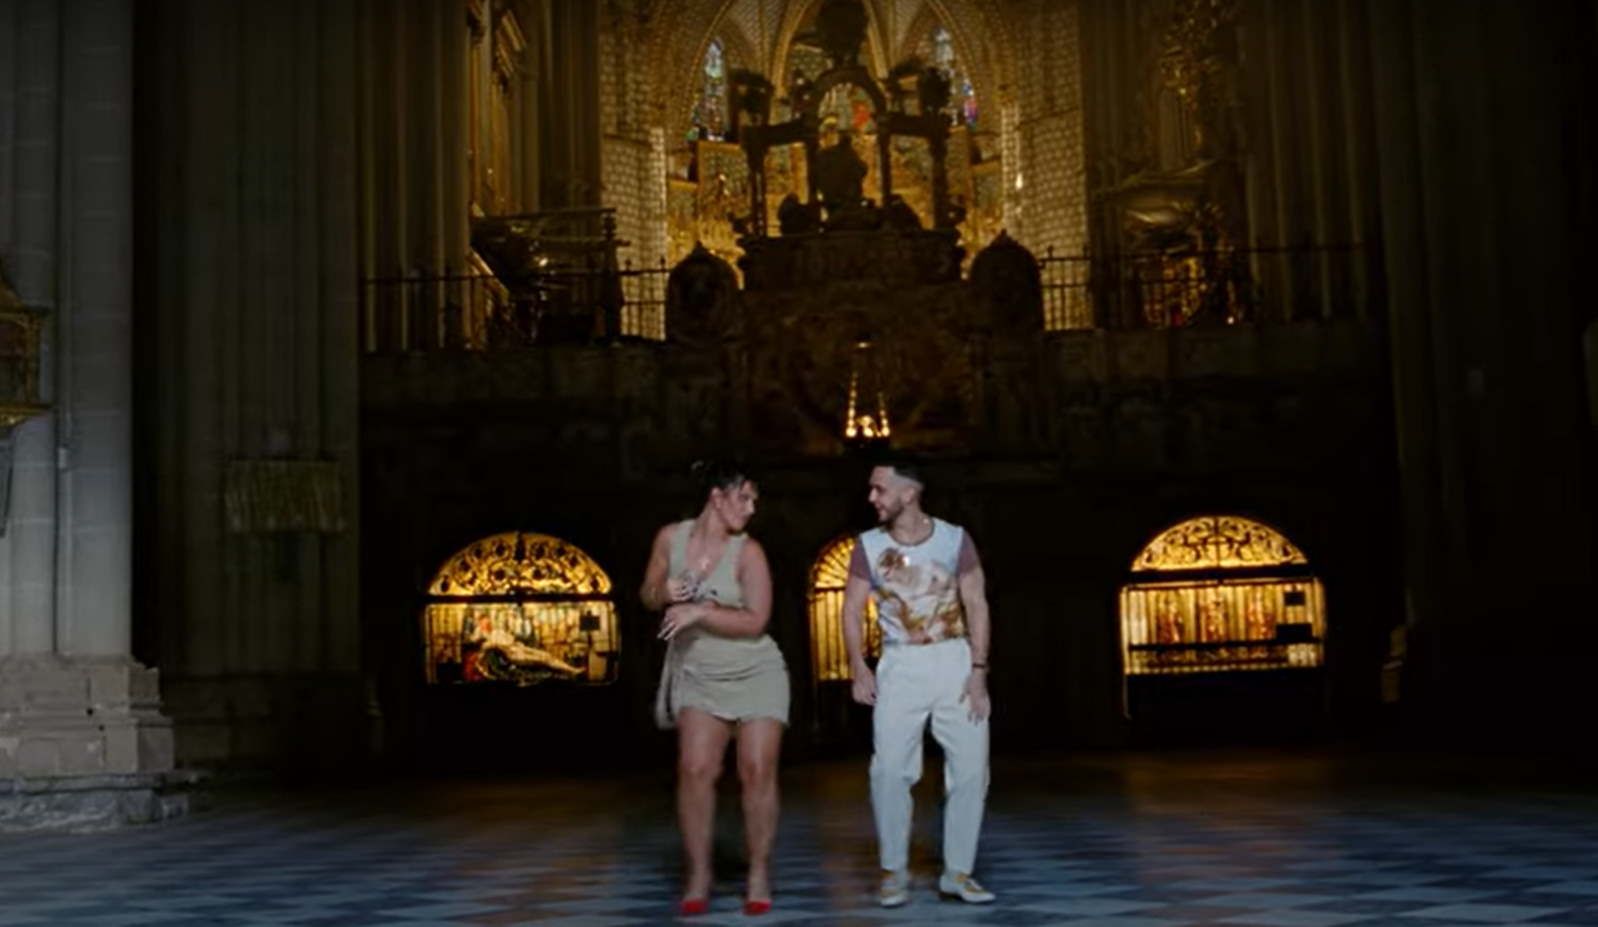 C. Tangana y Nathy Peluso bailan en el videoclip 'Ateo', grabado dentro de la Catedral de Toledo.